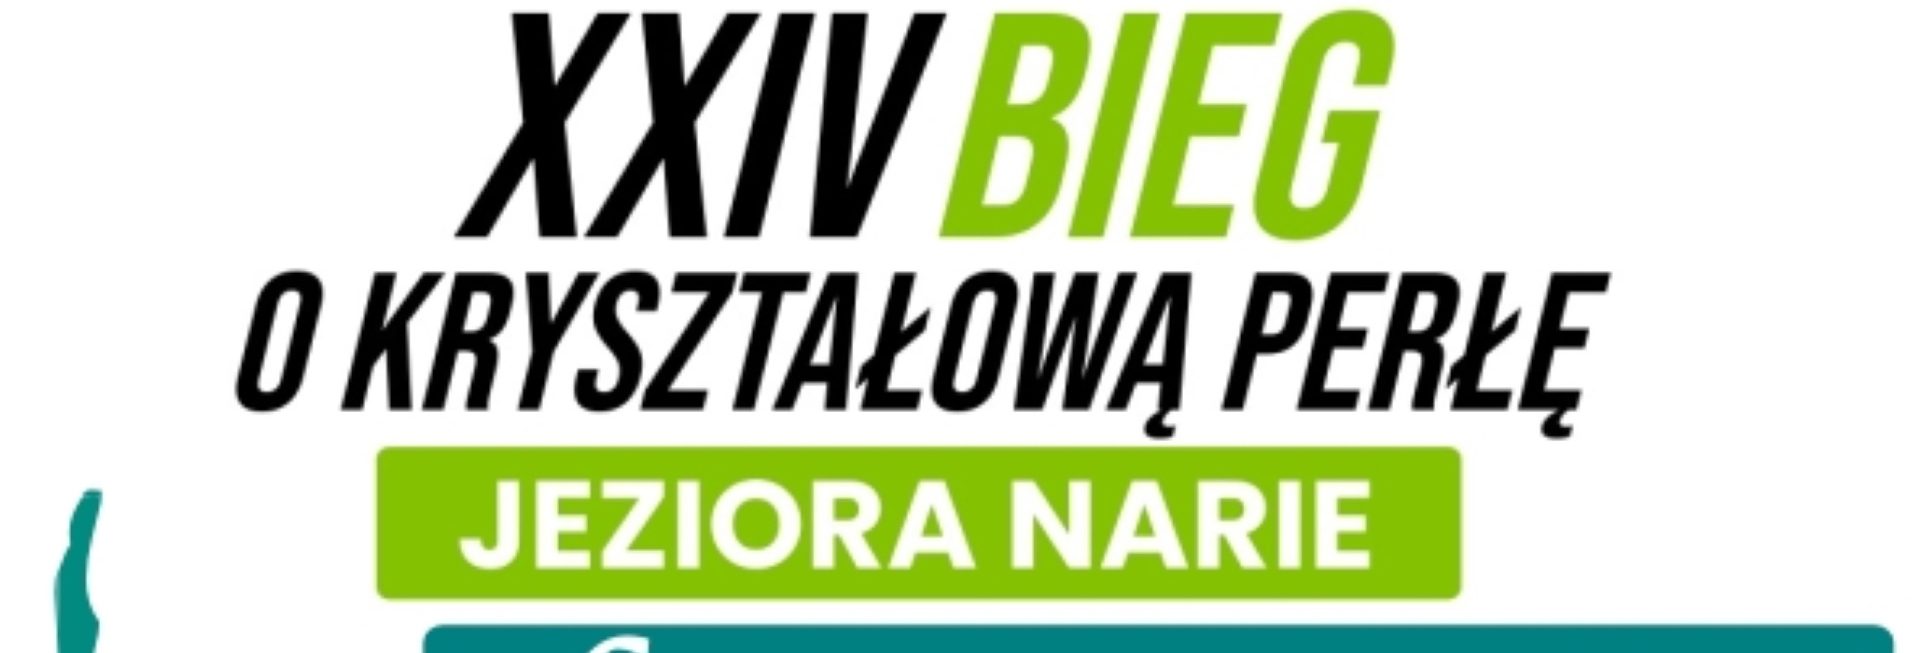 Plakat zapraszający w sobotę 6 lipca 2024 r. do miejscowości Kretowiny na 24. edycję Ogólnopolskiego Biegu o Kryształową Perłę Jeziora Narie Kretowiny 2024.